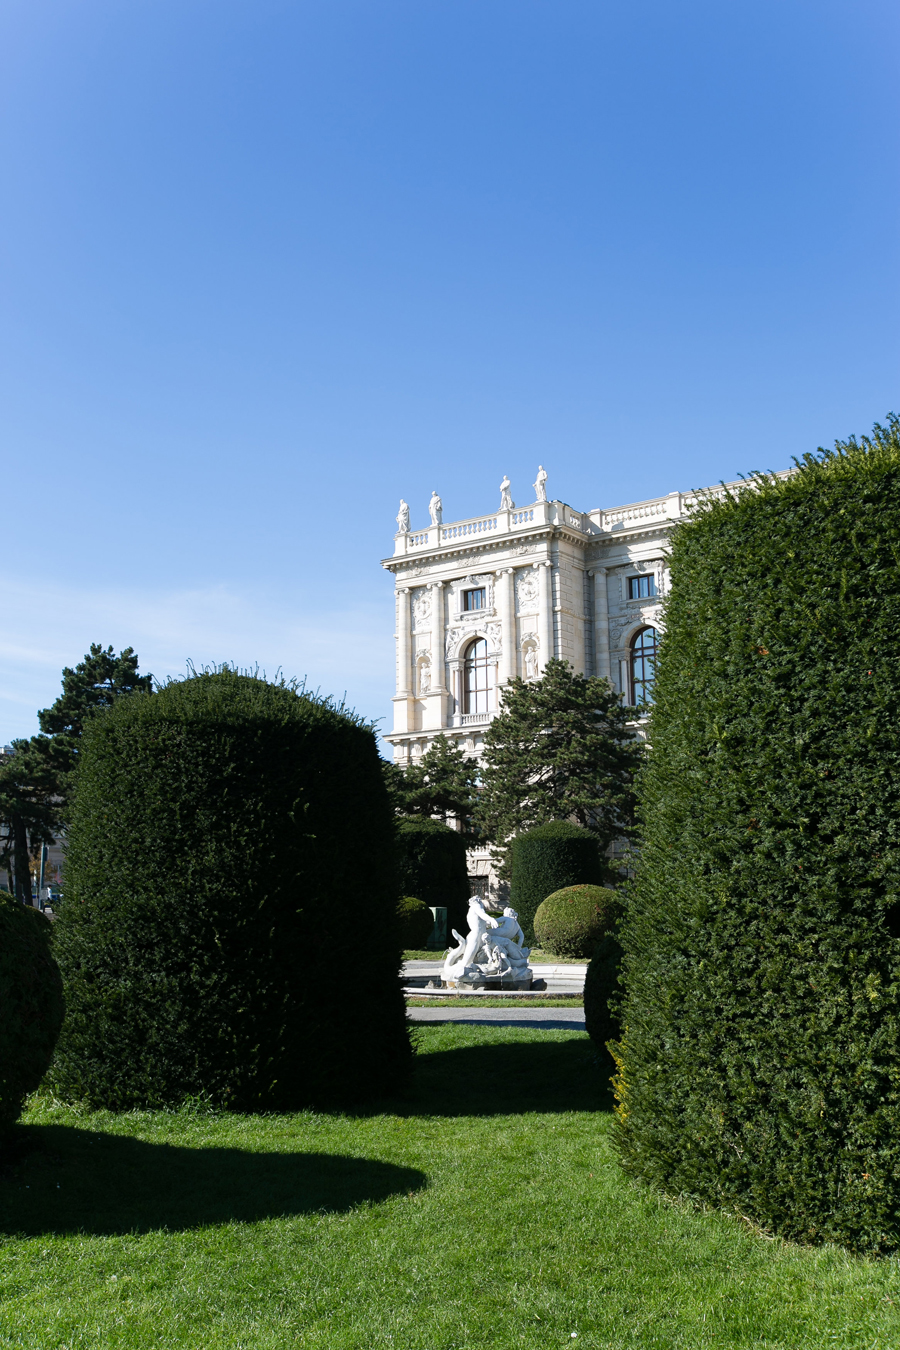 Landscaped Gardens in Vienna Austria